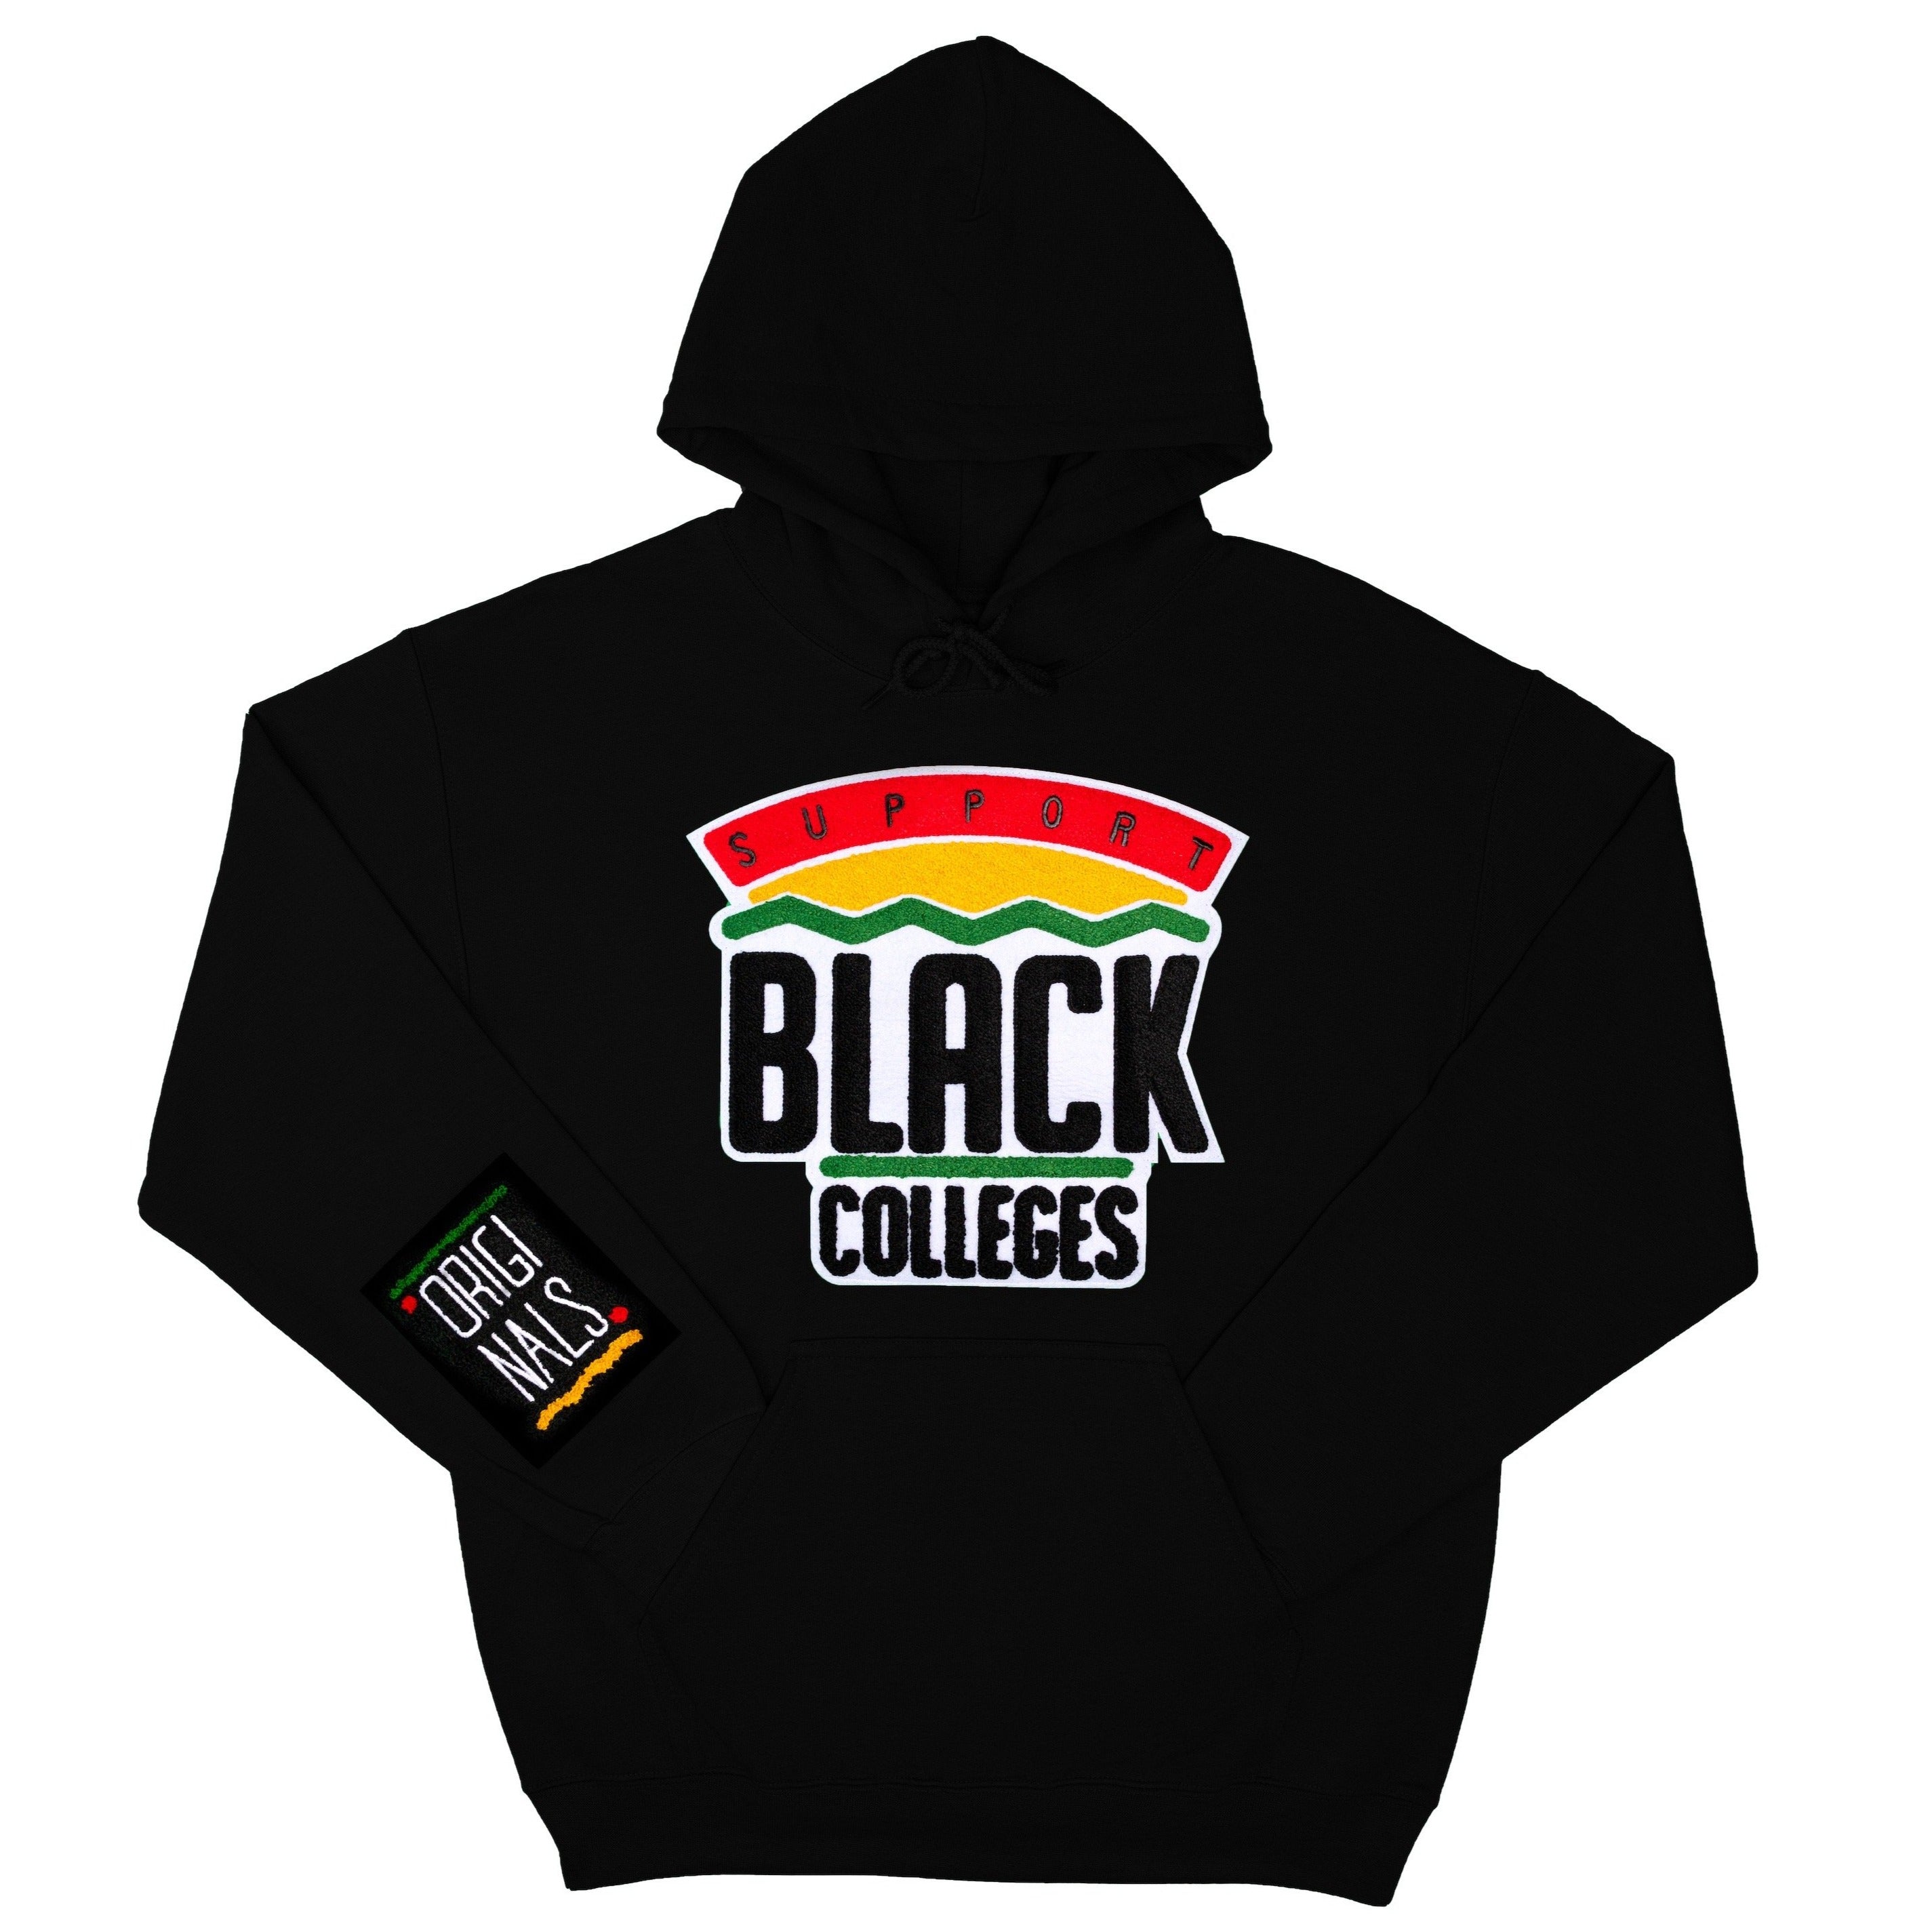 "Support Black College" Hoodie "Black"